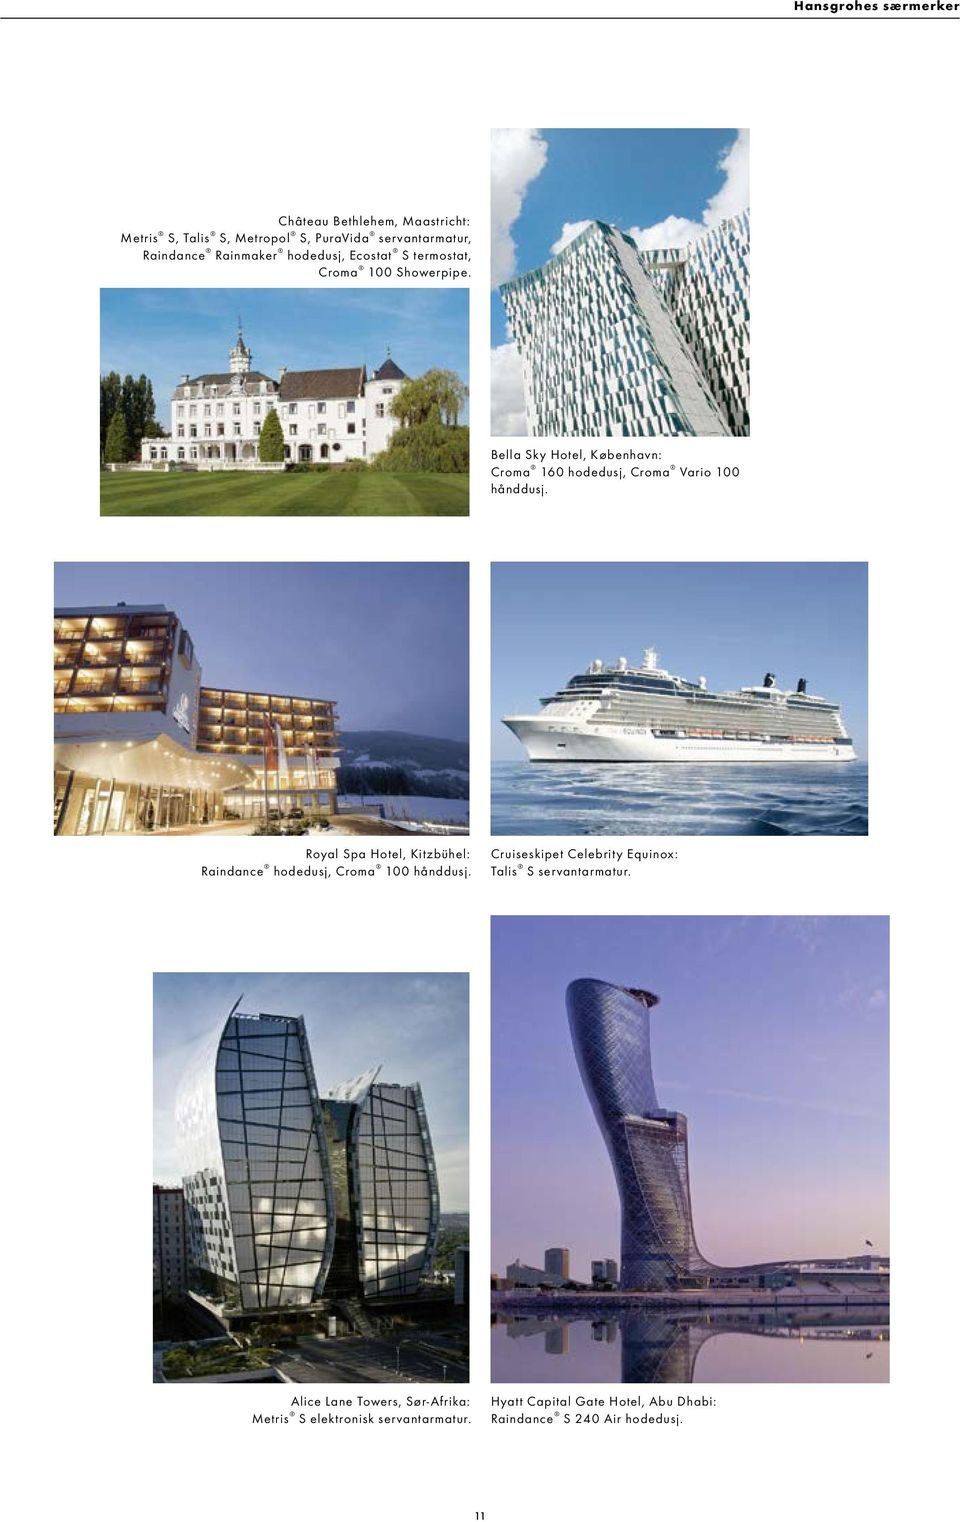 Royal Spa Hotel, Kitzbühel: Raindance hodedusj, Croma 100 hånddusj. Cruiseskipet Celebrity Equinox: Talis S servantarmatur.